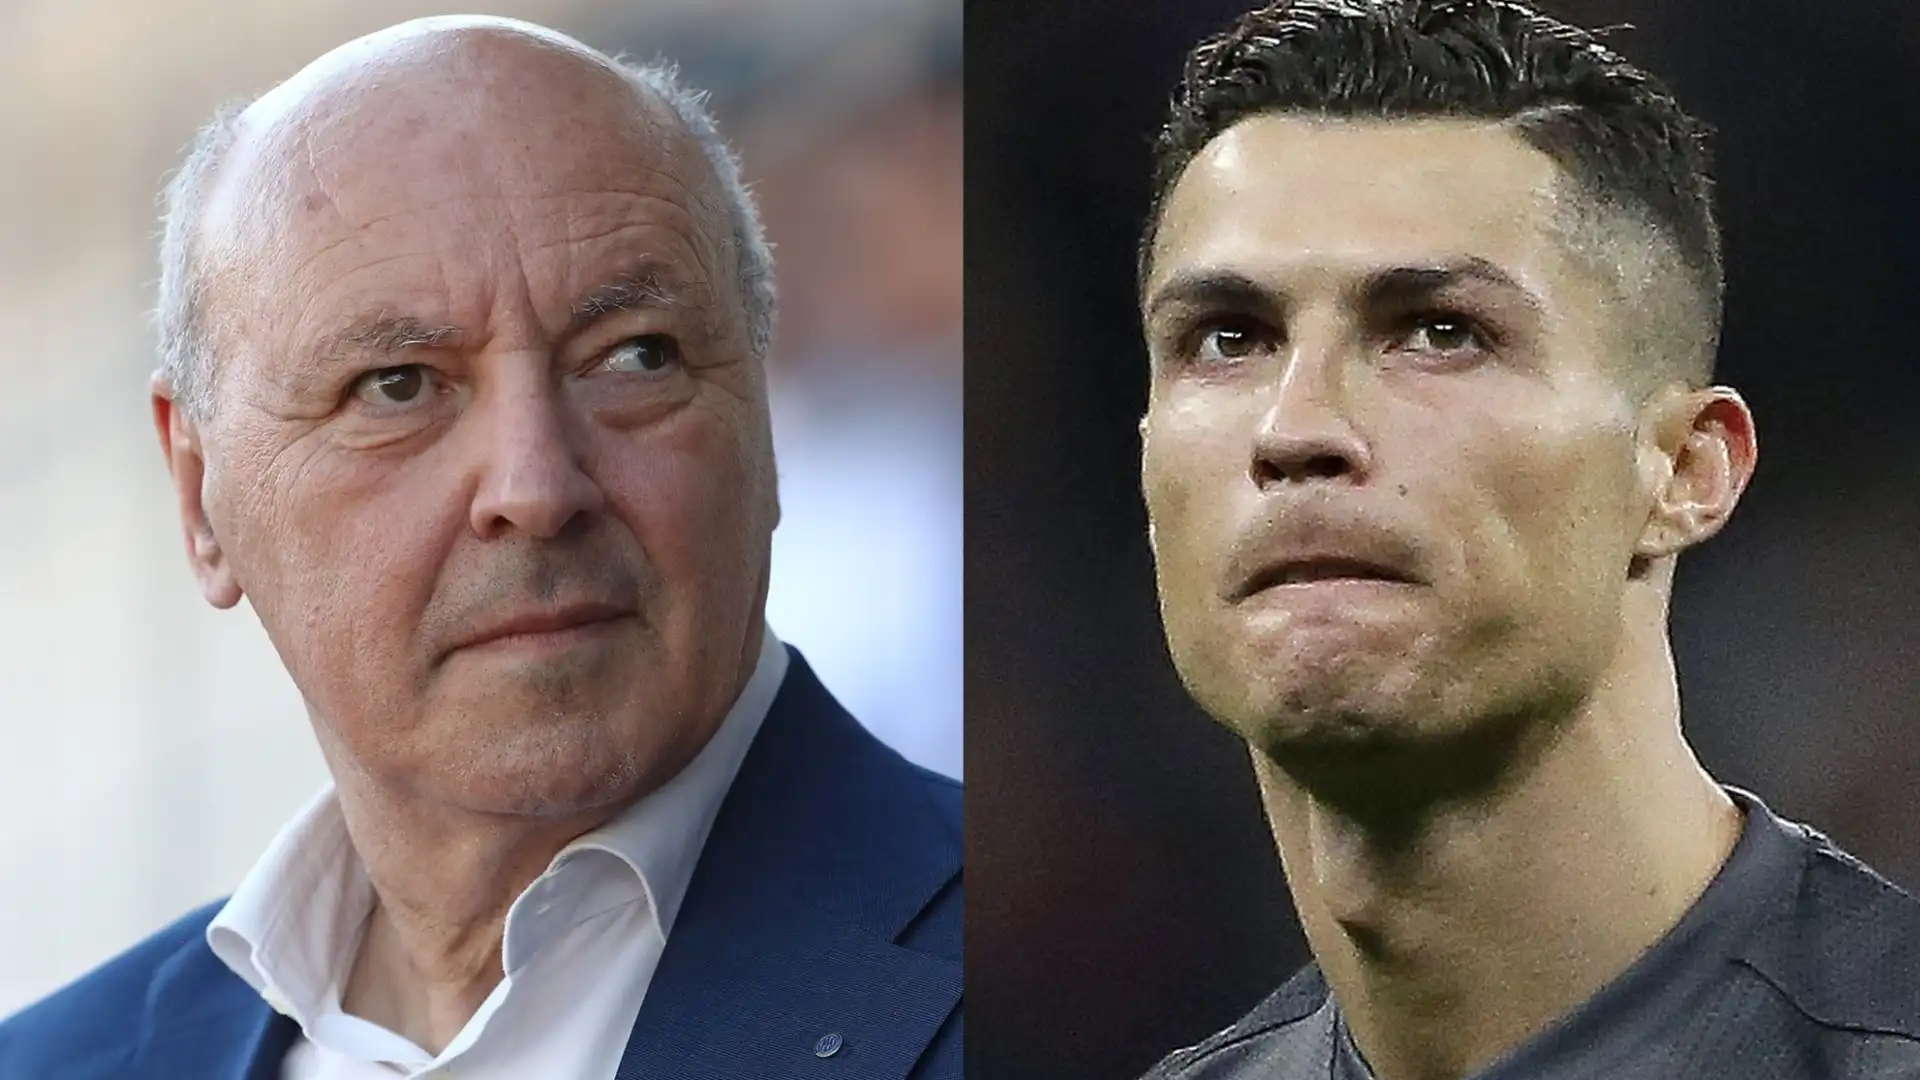 L'ammministratore delegato dell'Inter Beppe Marotta è tornato a parlare dell'operazione che portò Cristiano Ronaldo alla Juve nel 2018